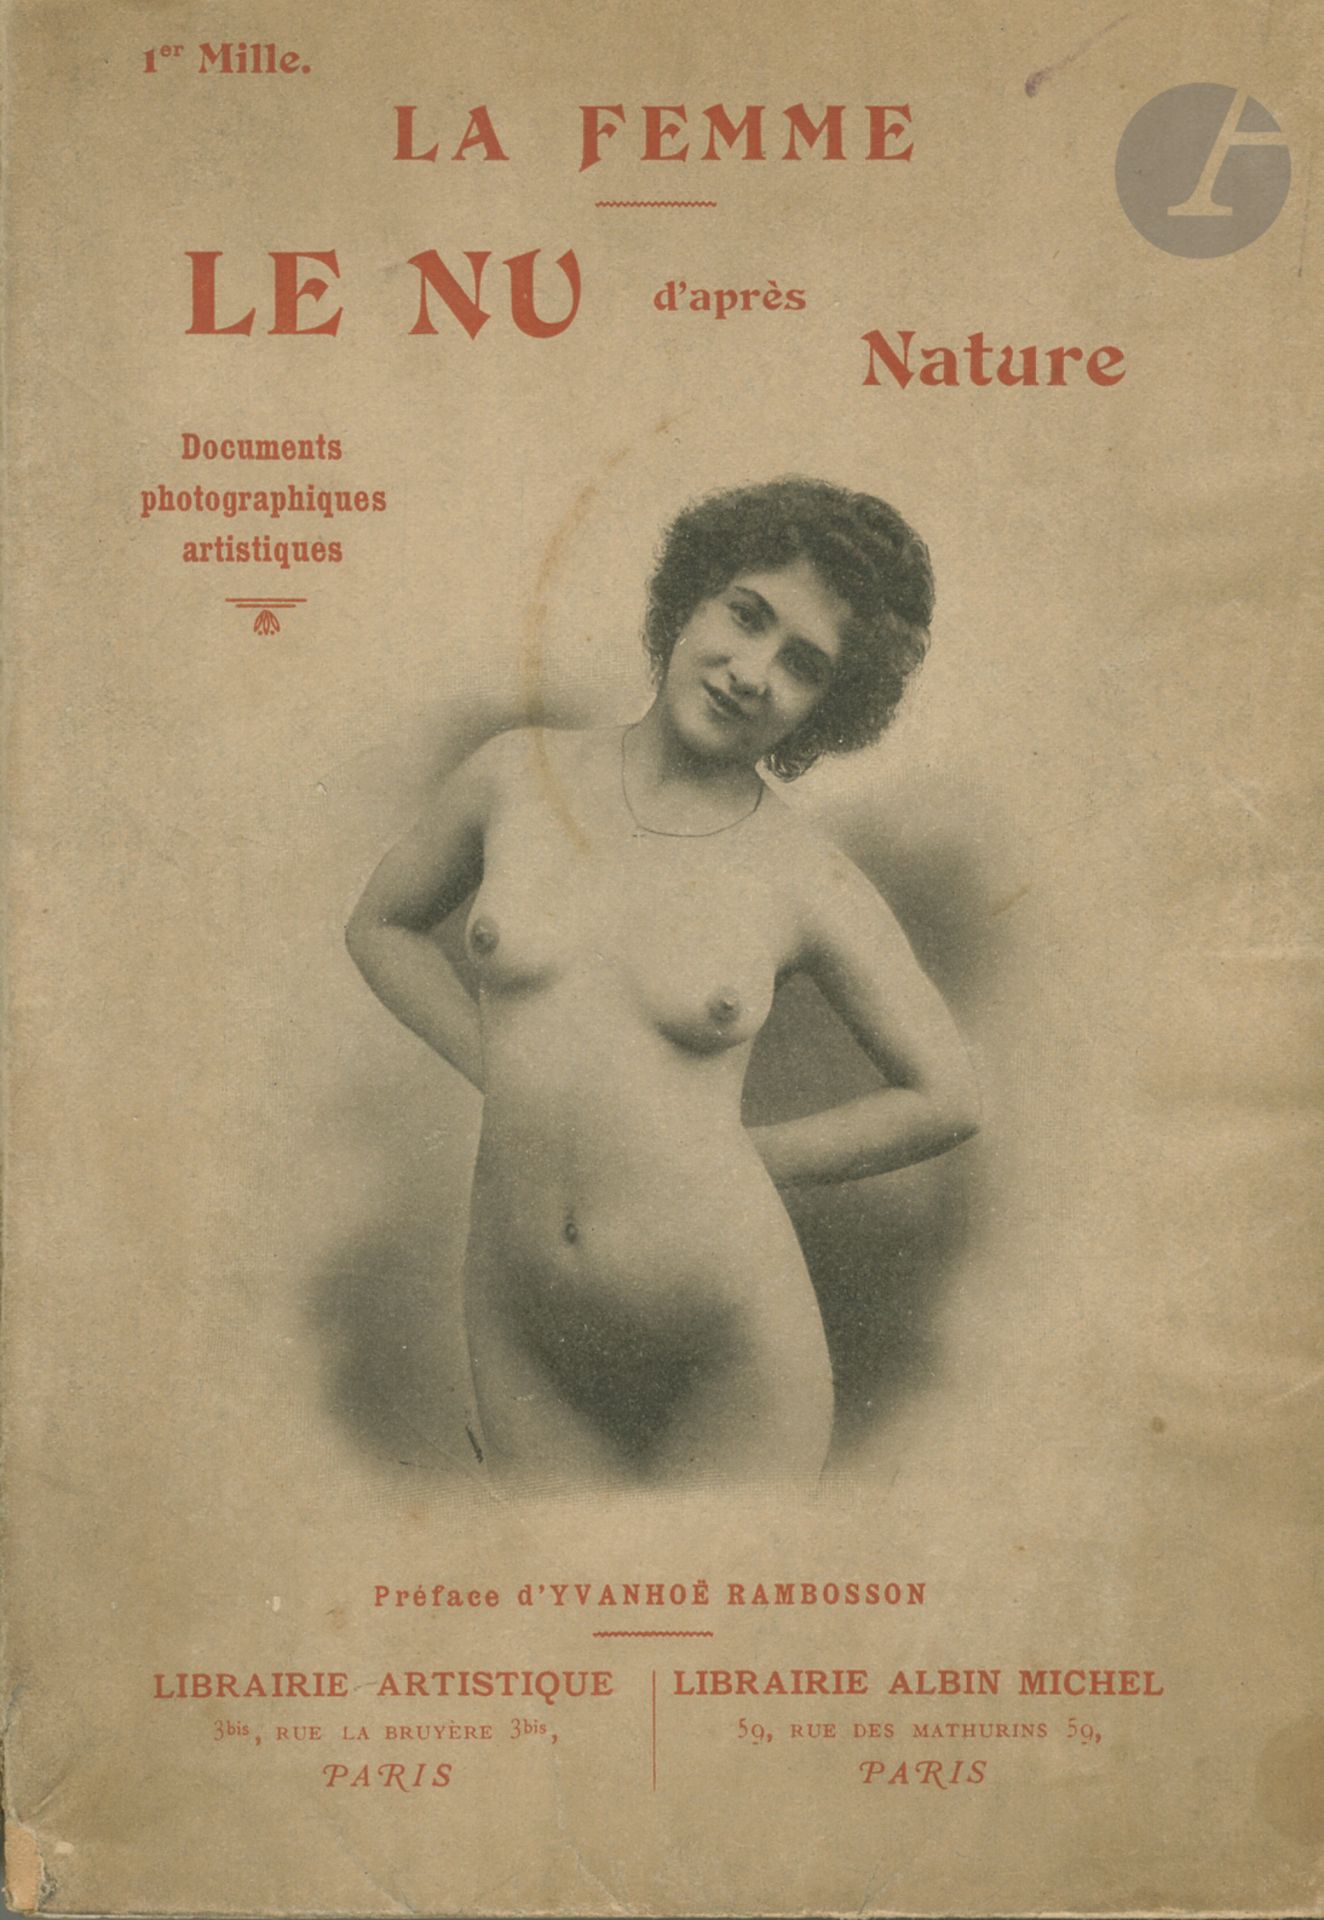 Null NU - LES BEAUTÉS DE LA FEMME
2 volumes.
* Le Nu d'après Nature. La Femme. 
&hellip;